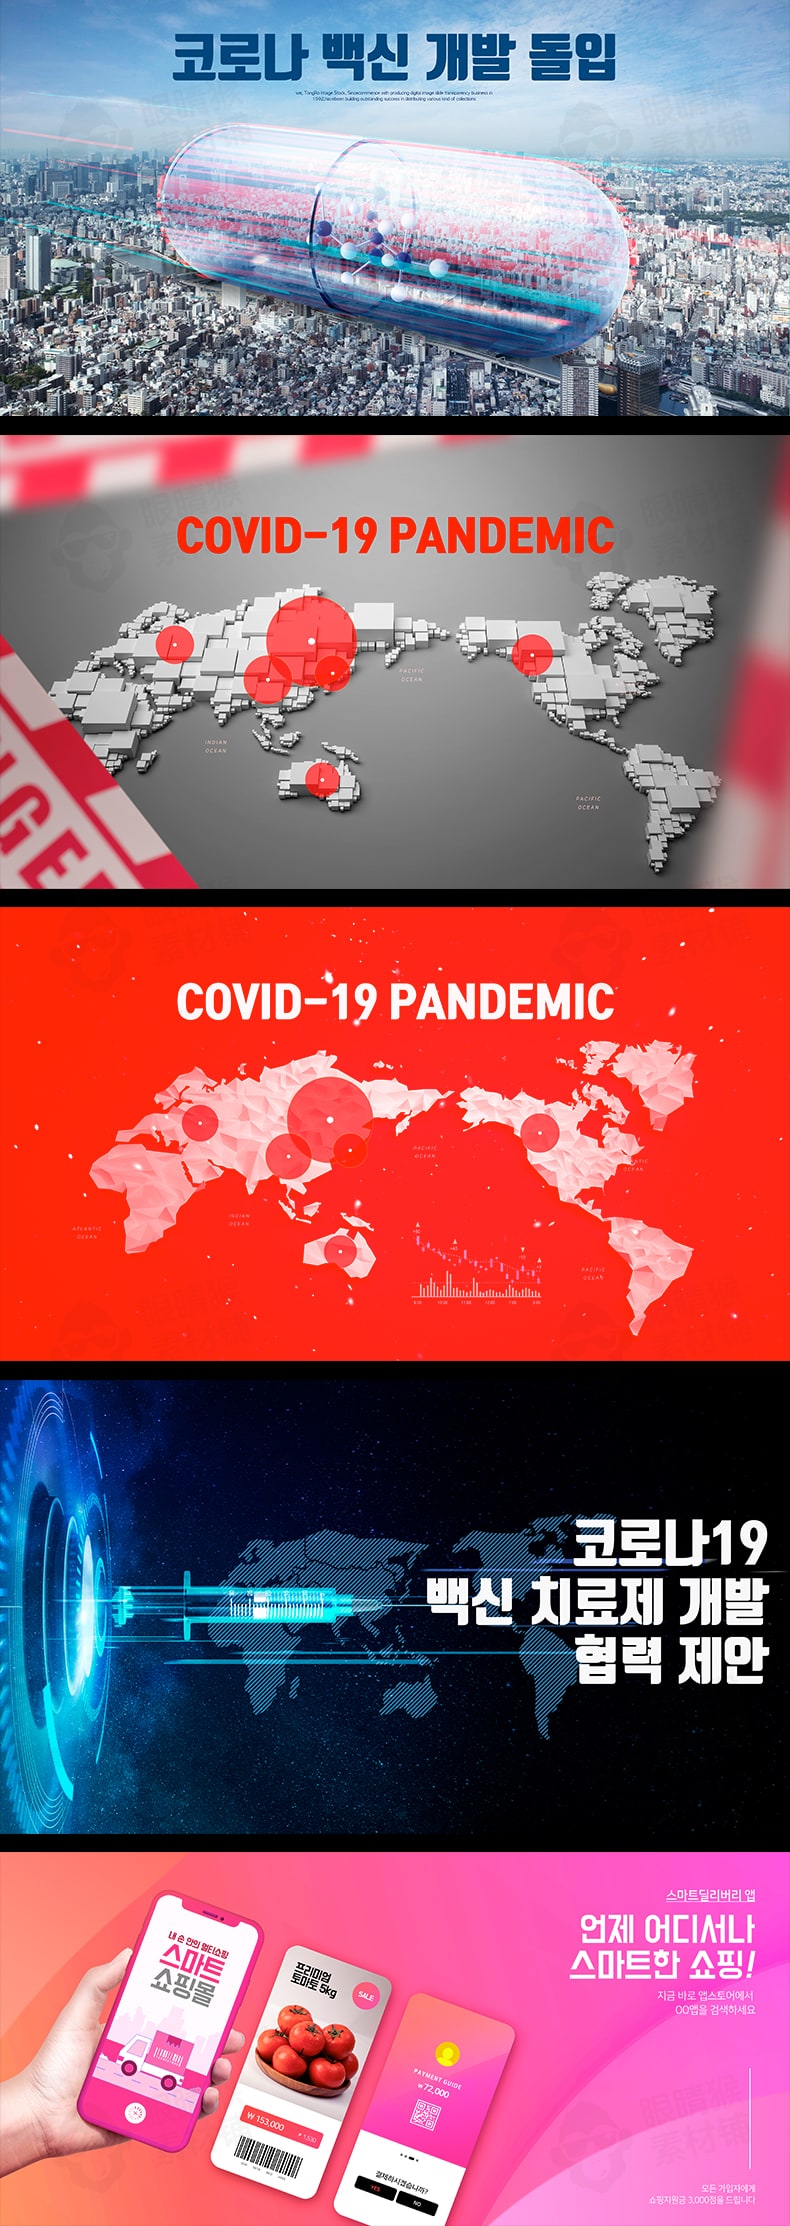 6张2019新冠肺炎疫情宣传抗击病毒预防传播海报PSD设计素材源文件-海报素材-到位啦UI